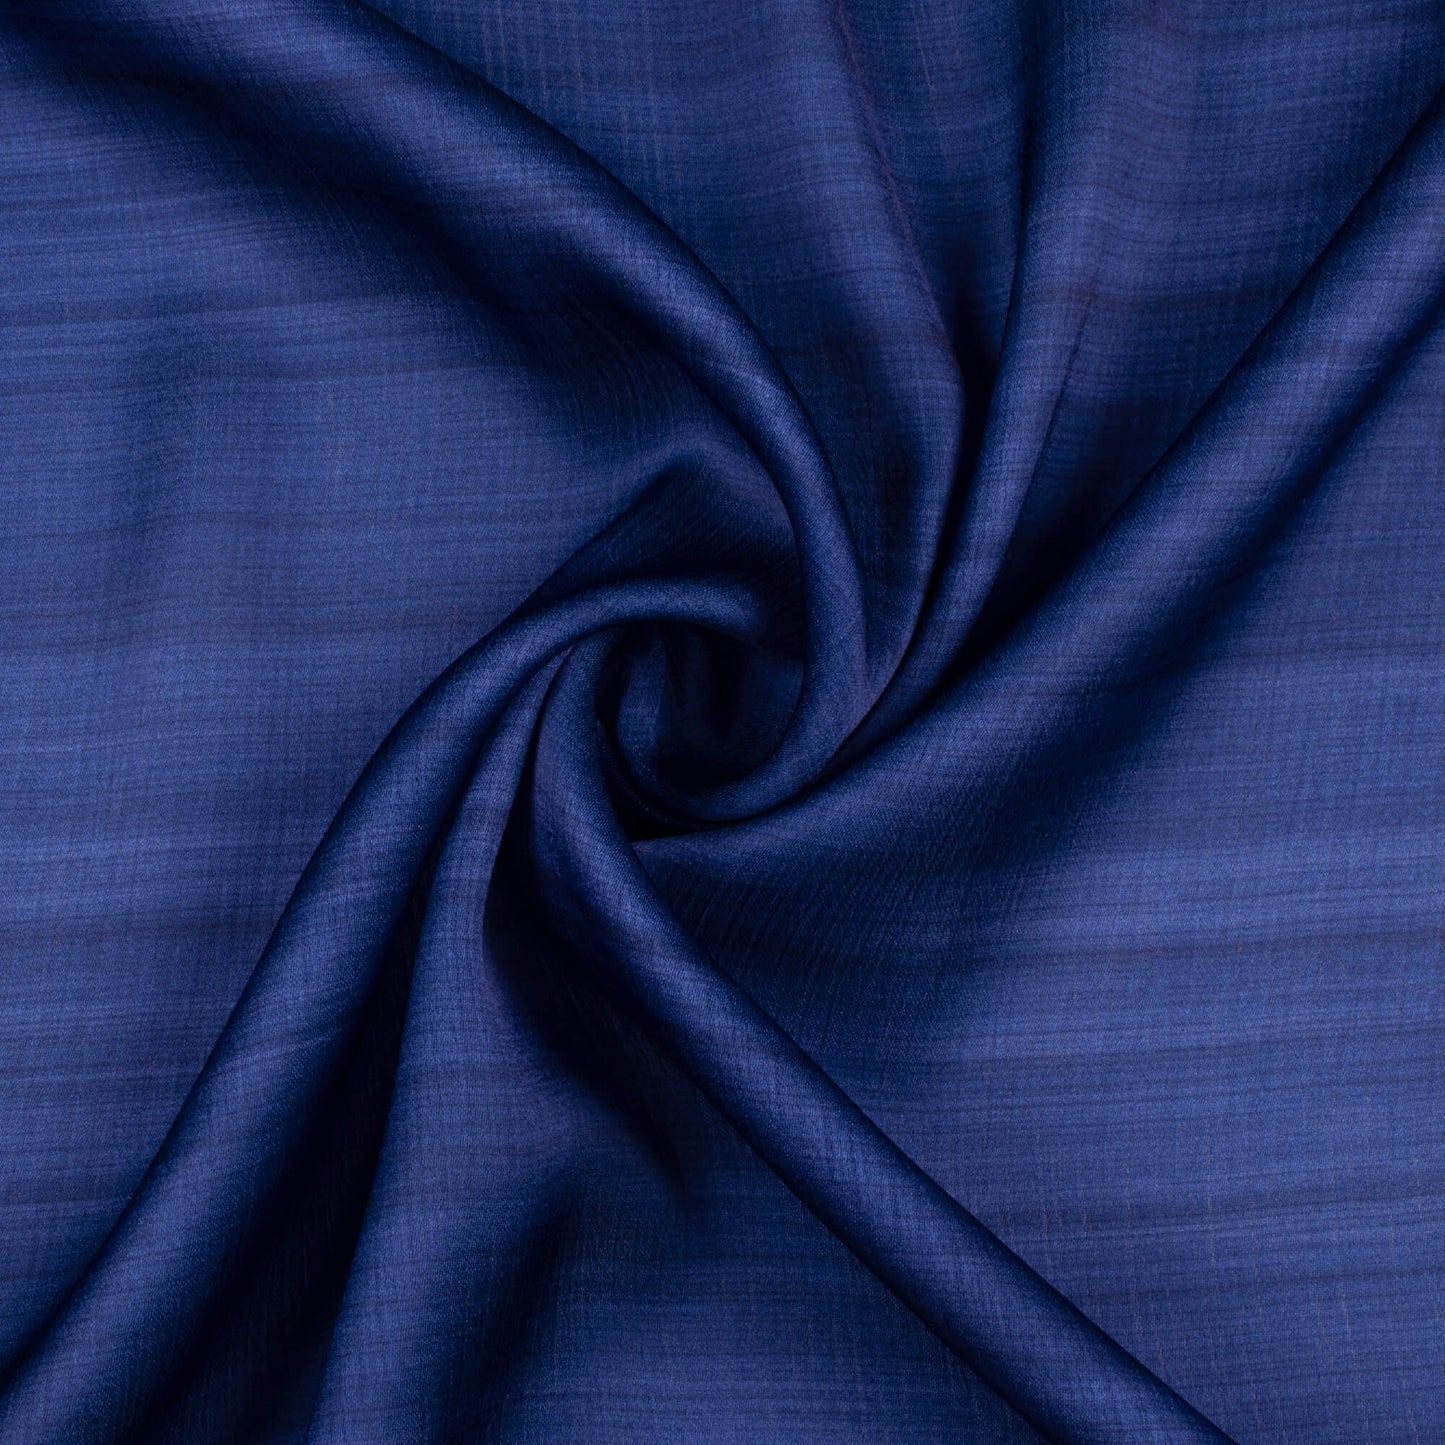 Prussian Blue Texture Pattern Digital Print Chiffon Satin Fabric